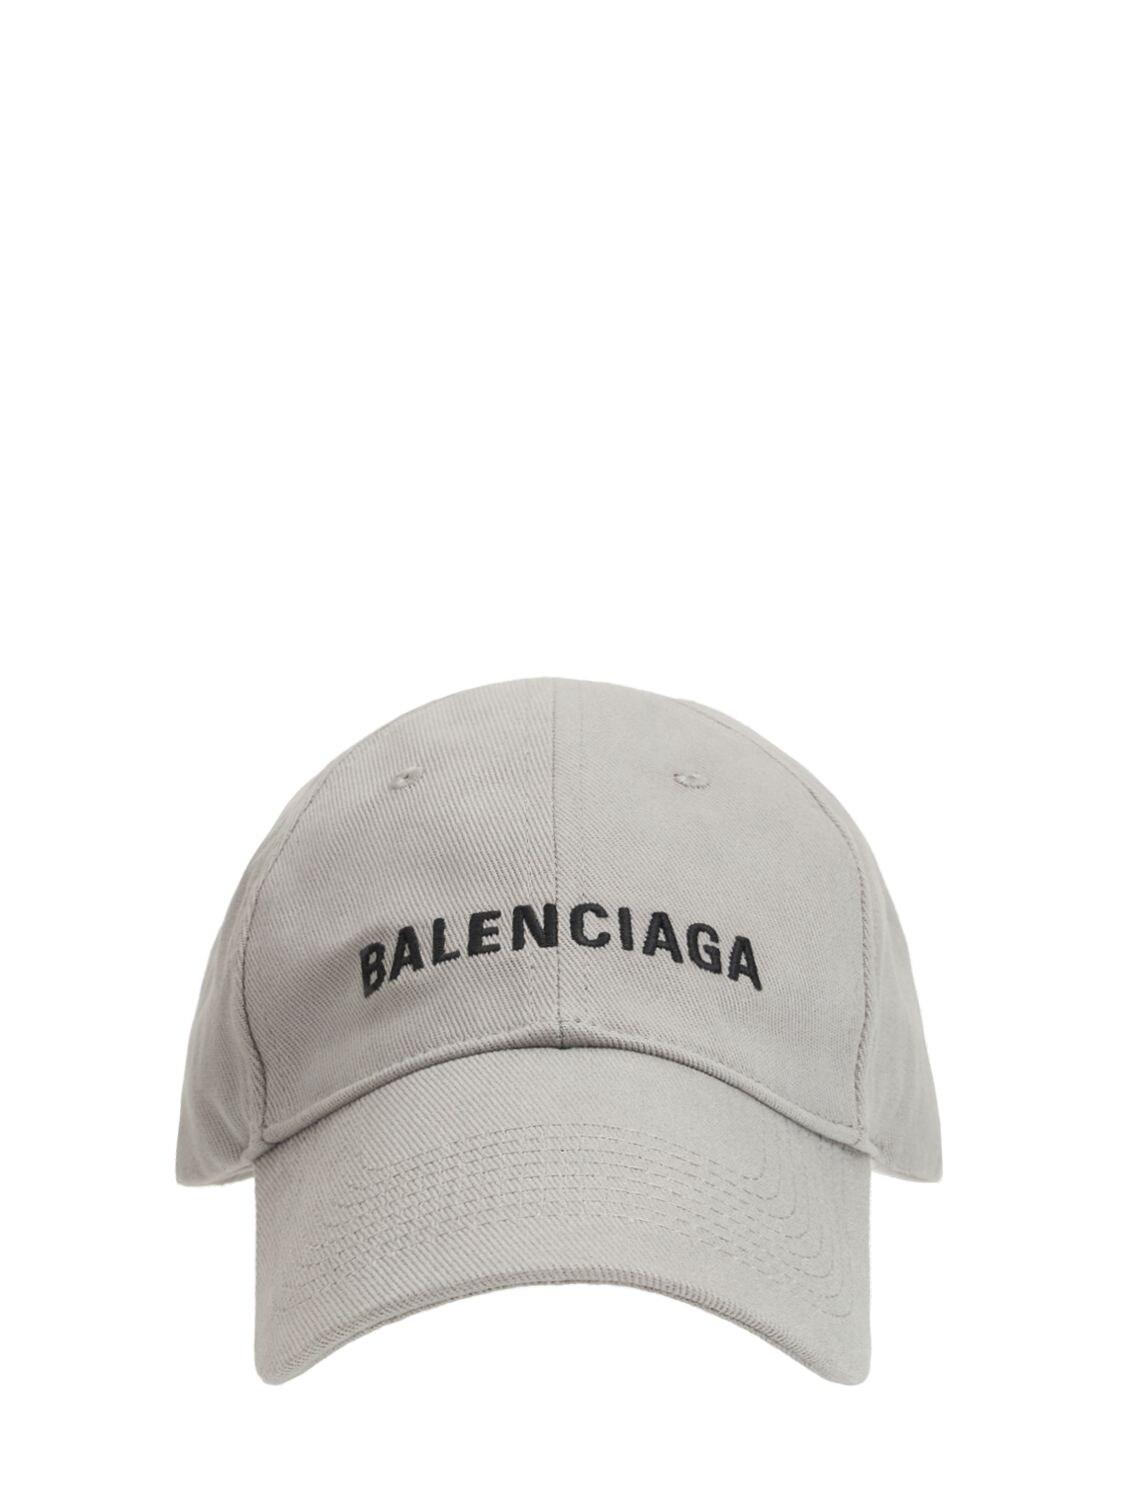 Balenciaga Logo Embroidery Baseball Cap in Lead/Black (Gray) for 